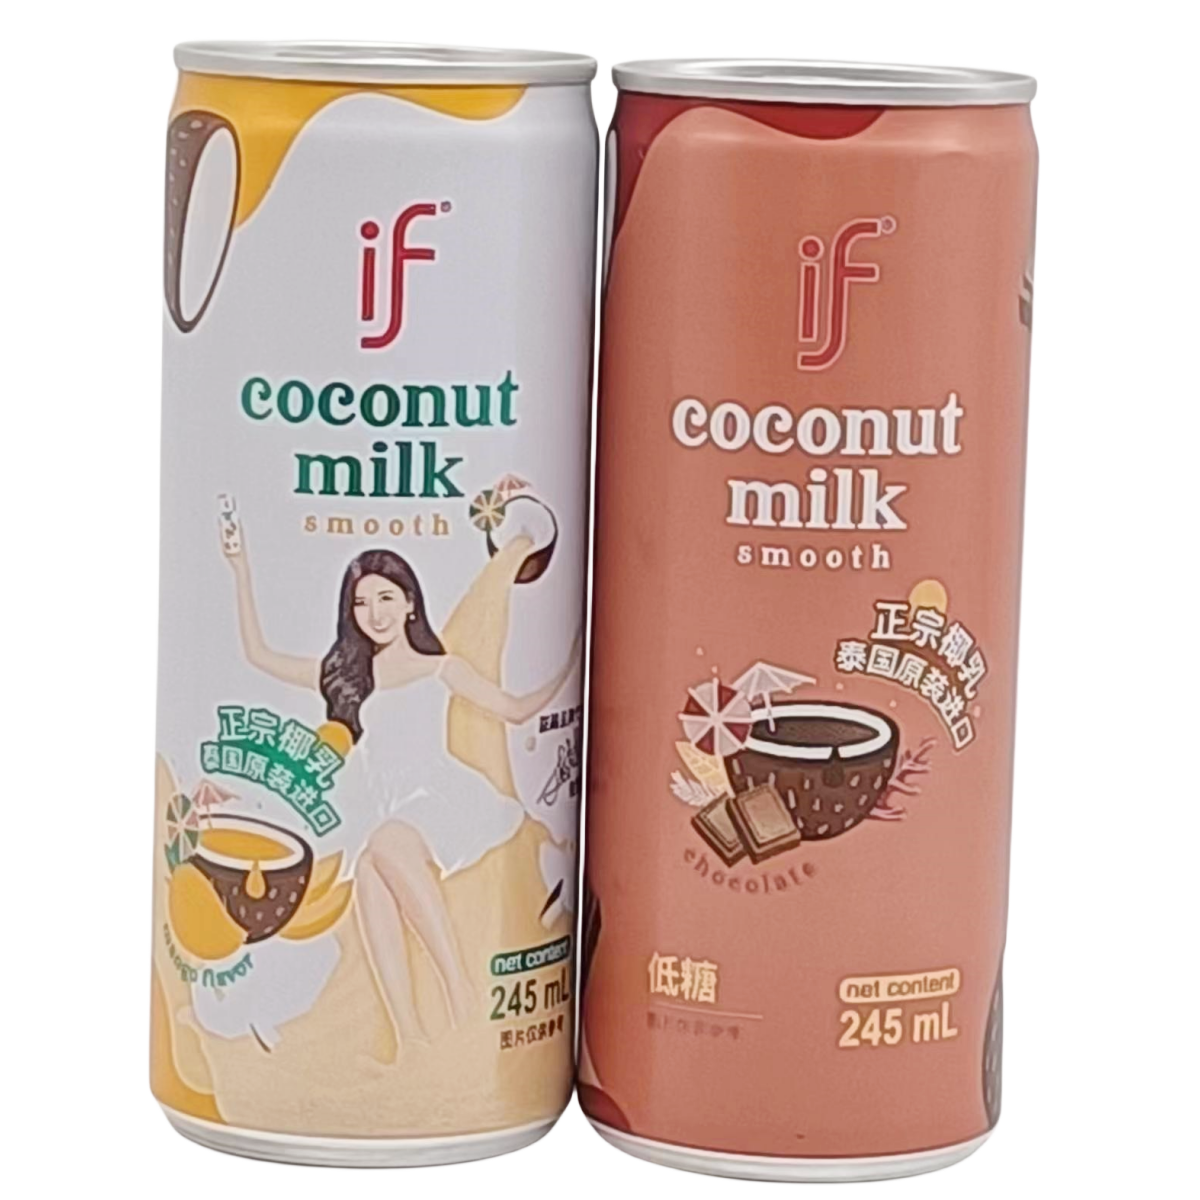 临期特价裸价 泰国进口丝滑巧克力味芒果味椰汁饮料